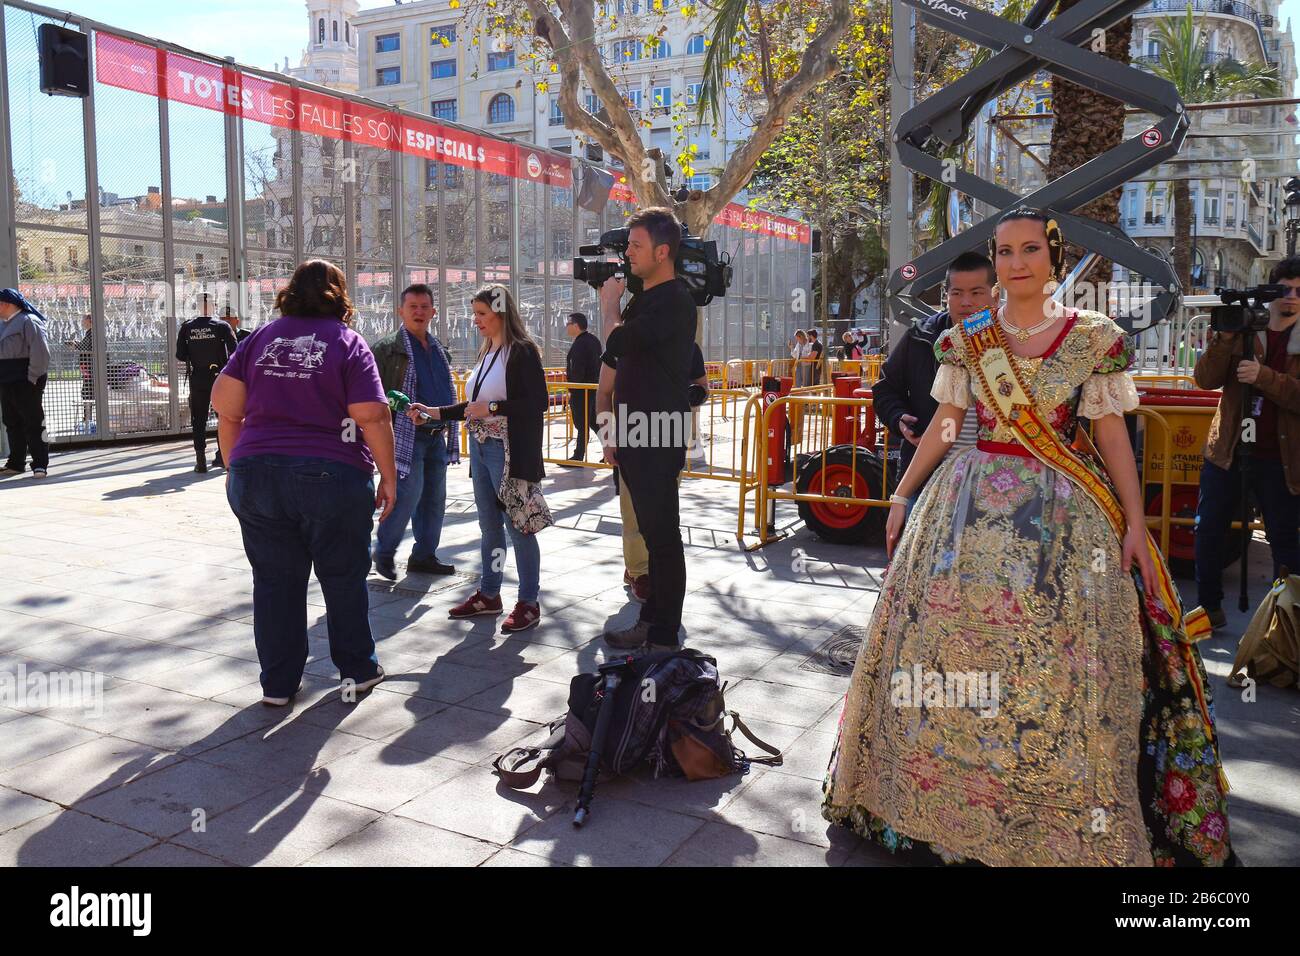 Entre bastidores en el festival de fallas con una falera tradicionalmente vestida y una entrevista con la famosa pirotécnica Reyes Martí. Foto de stock